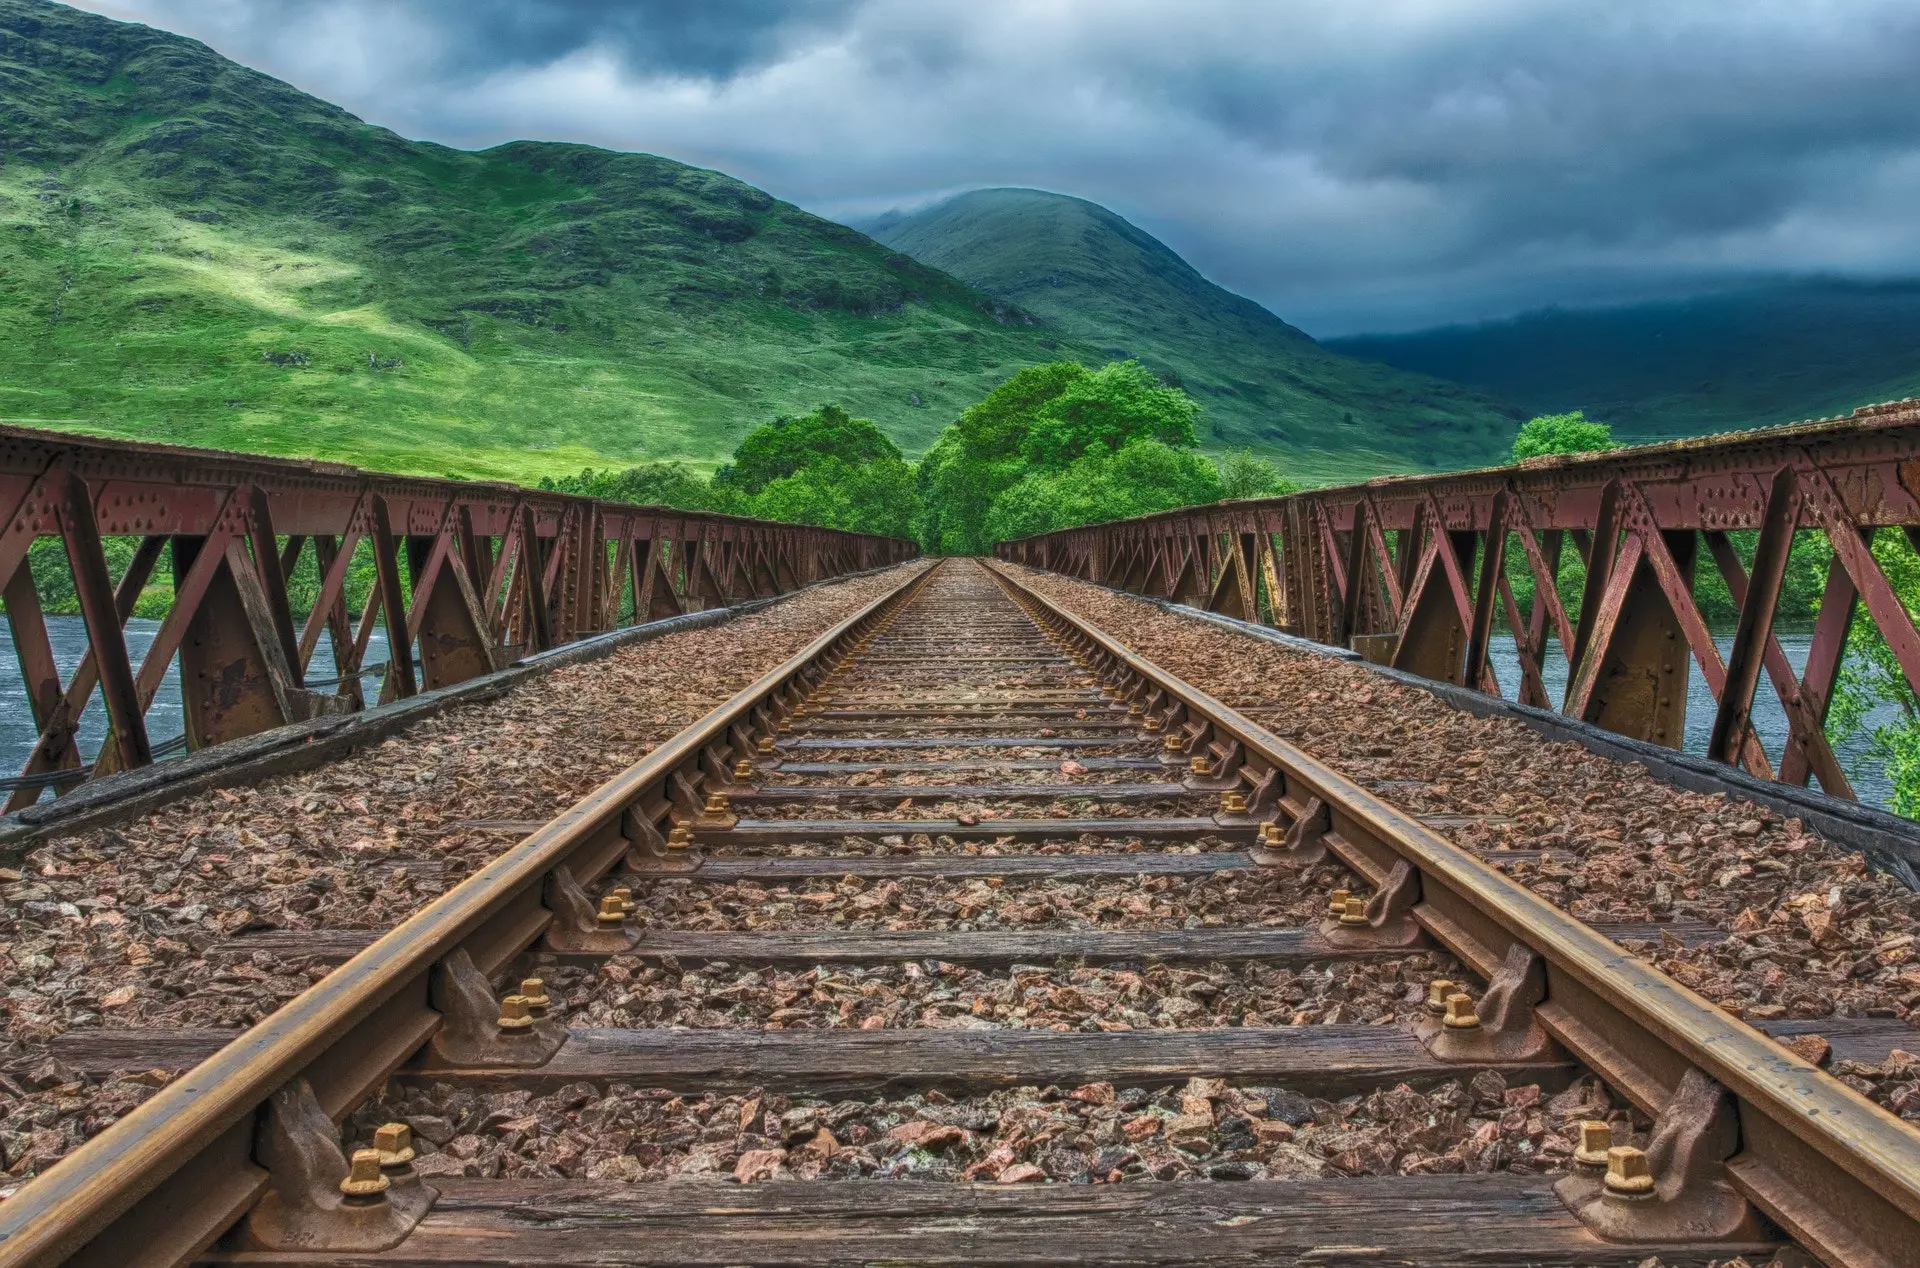  A railroad track